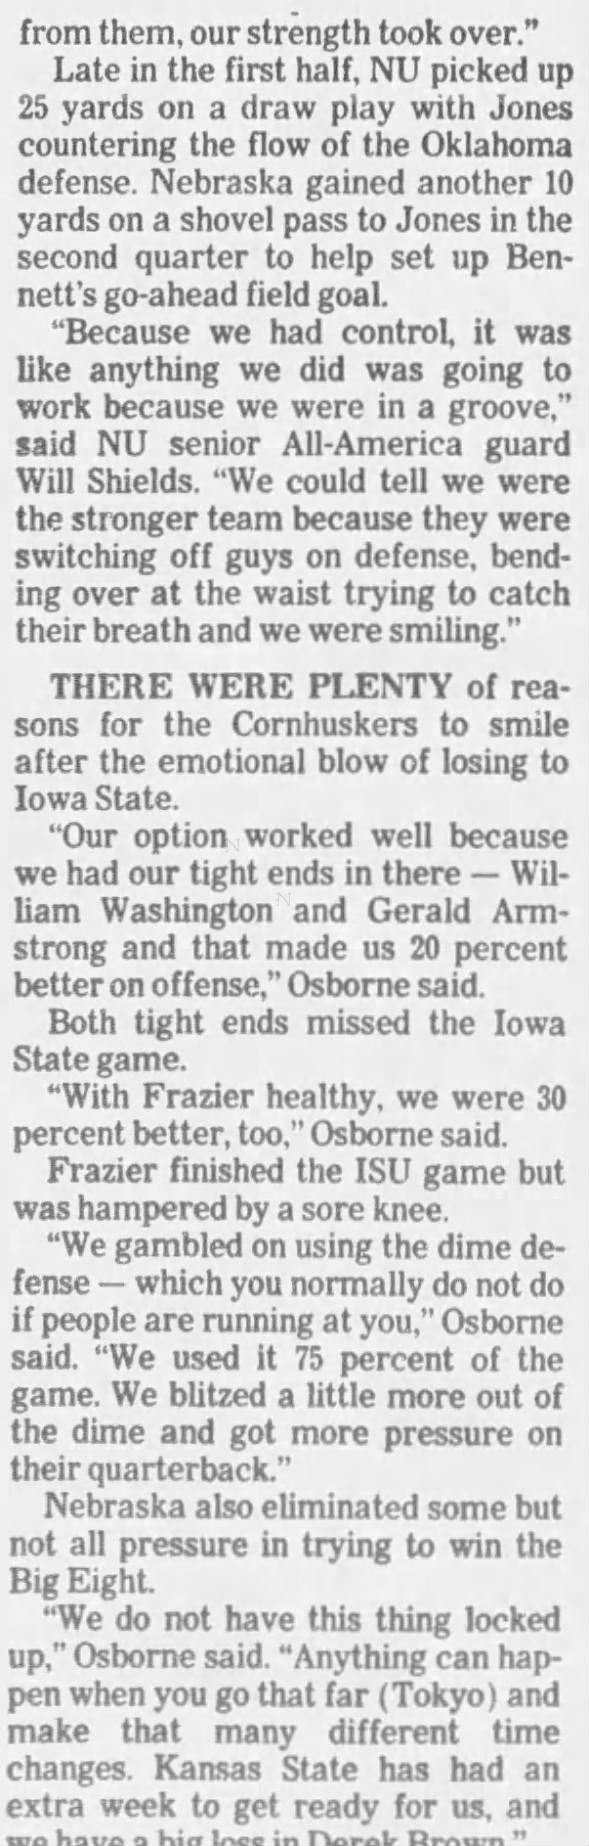 1992 Nebraska-Oklahoma football, LJS3